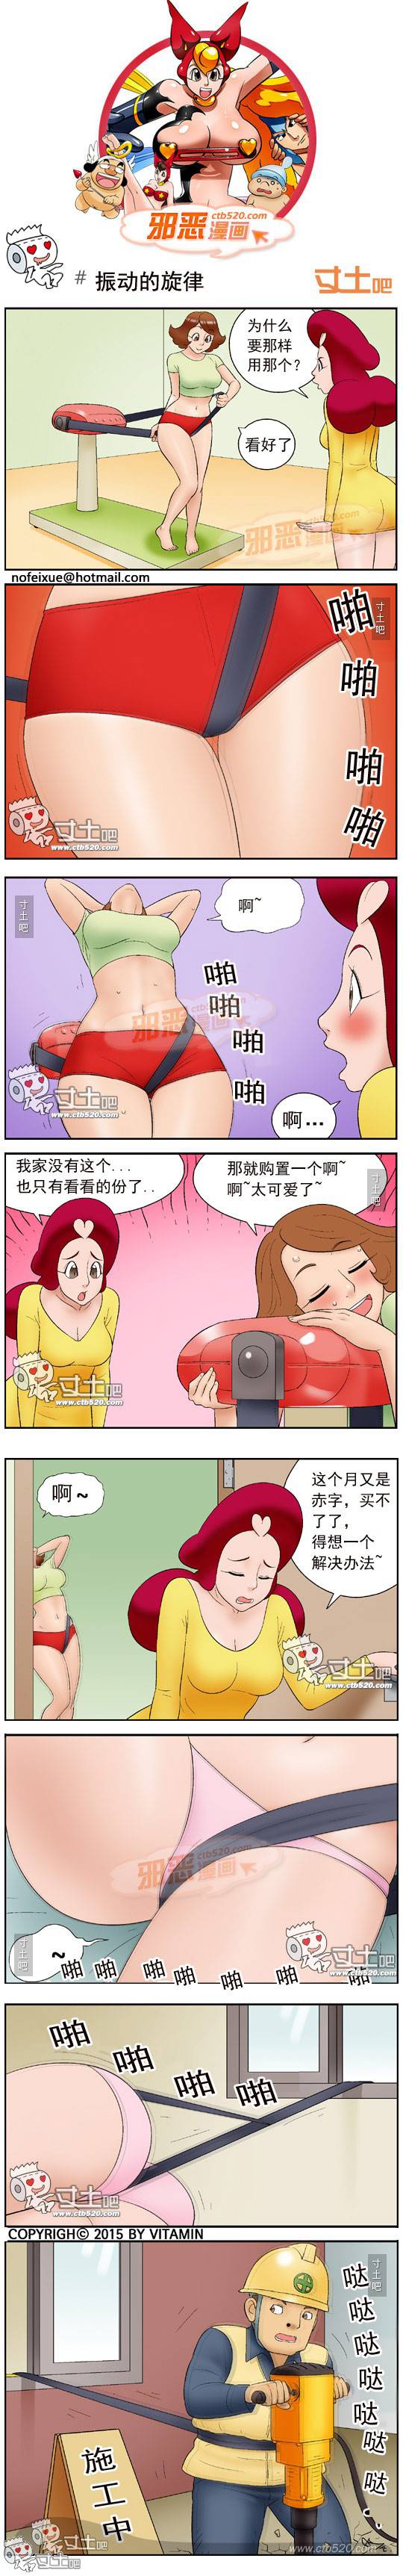 邪恶漫画爆笑囧图第310刊：间谍任务完成